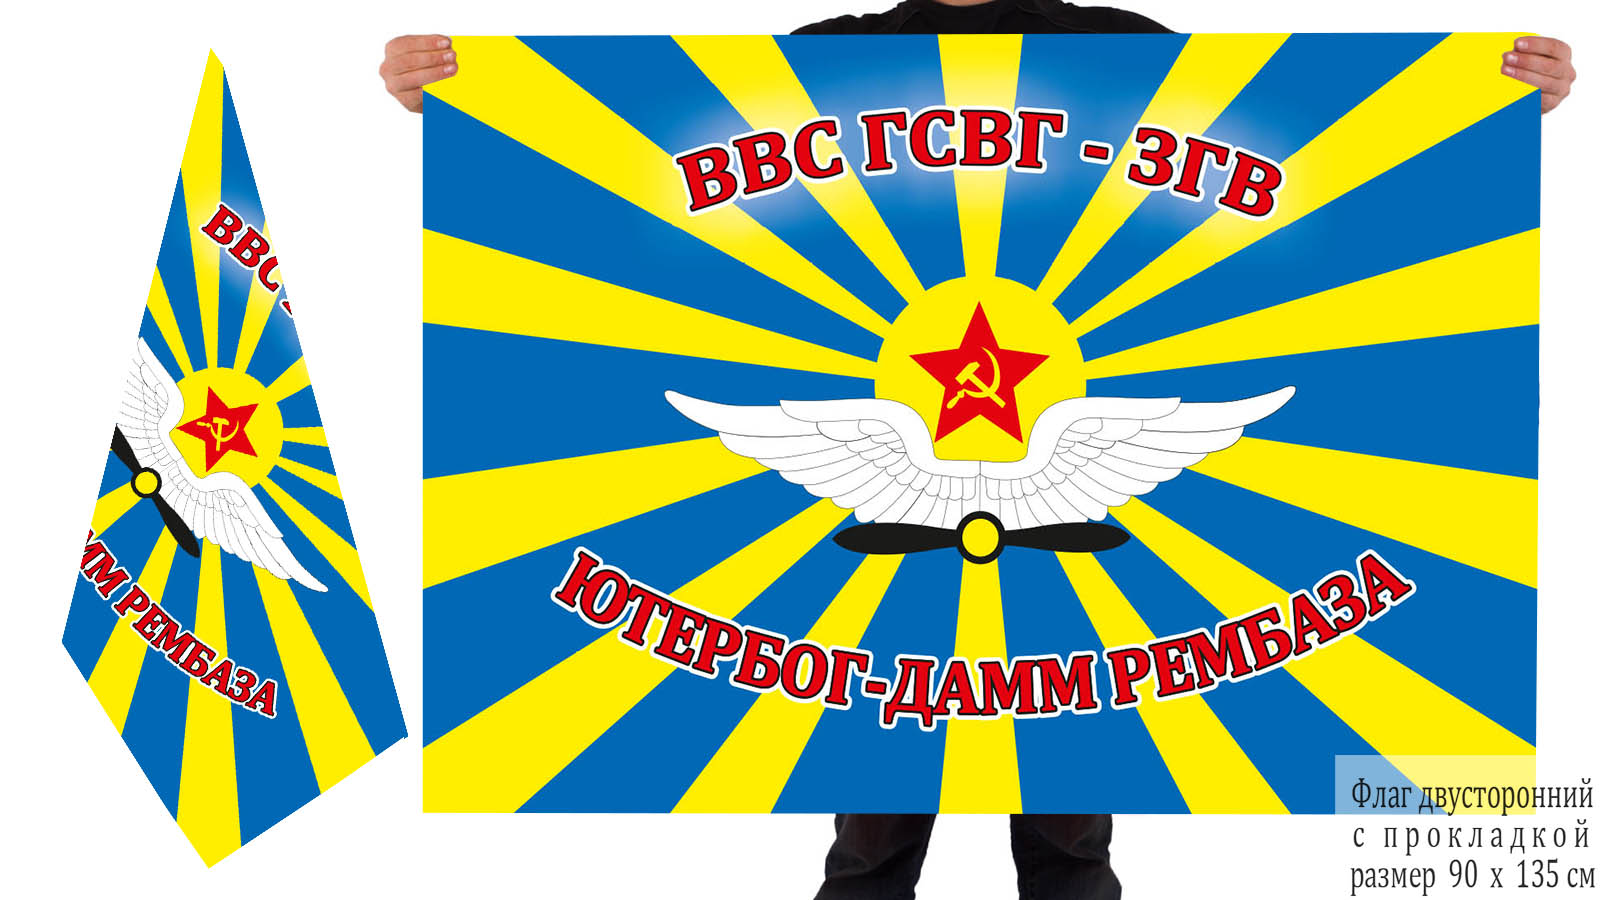 Купить в Москве флаг рембазы ВВС ГСВГ-ЗГВ, Ютербог-Дамм